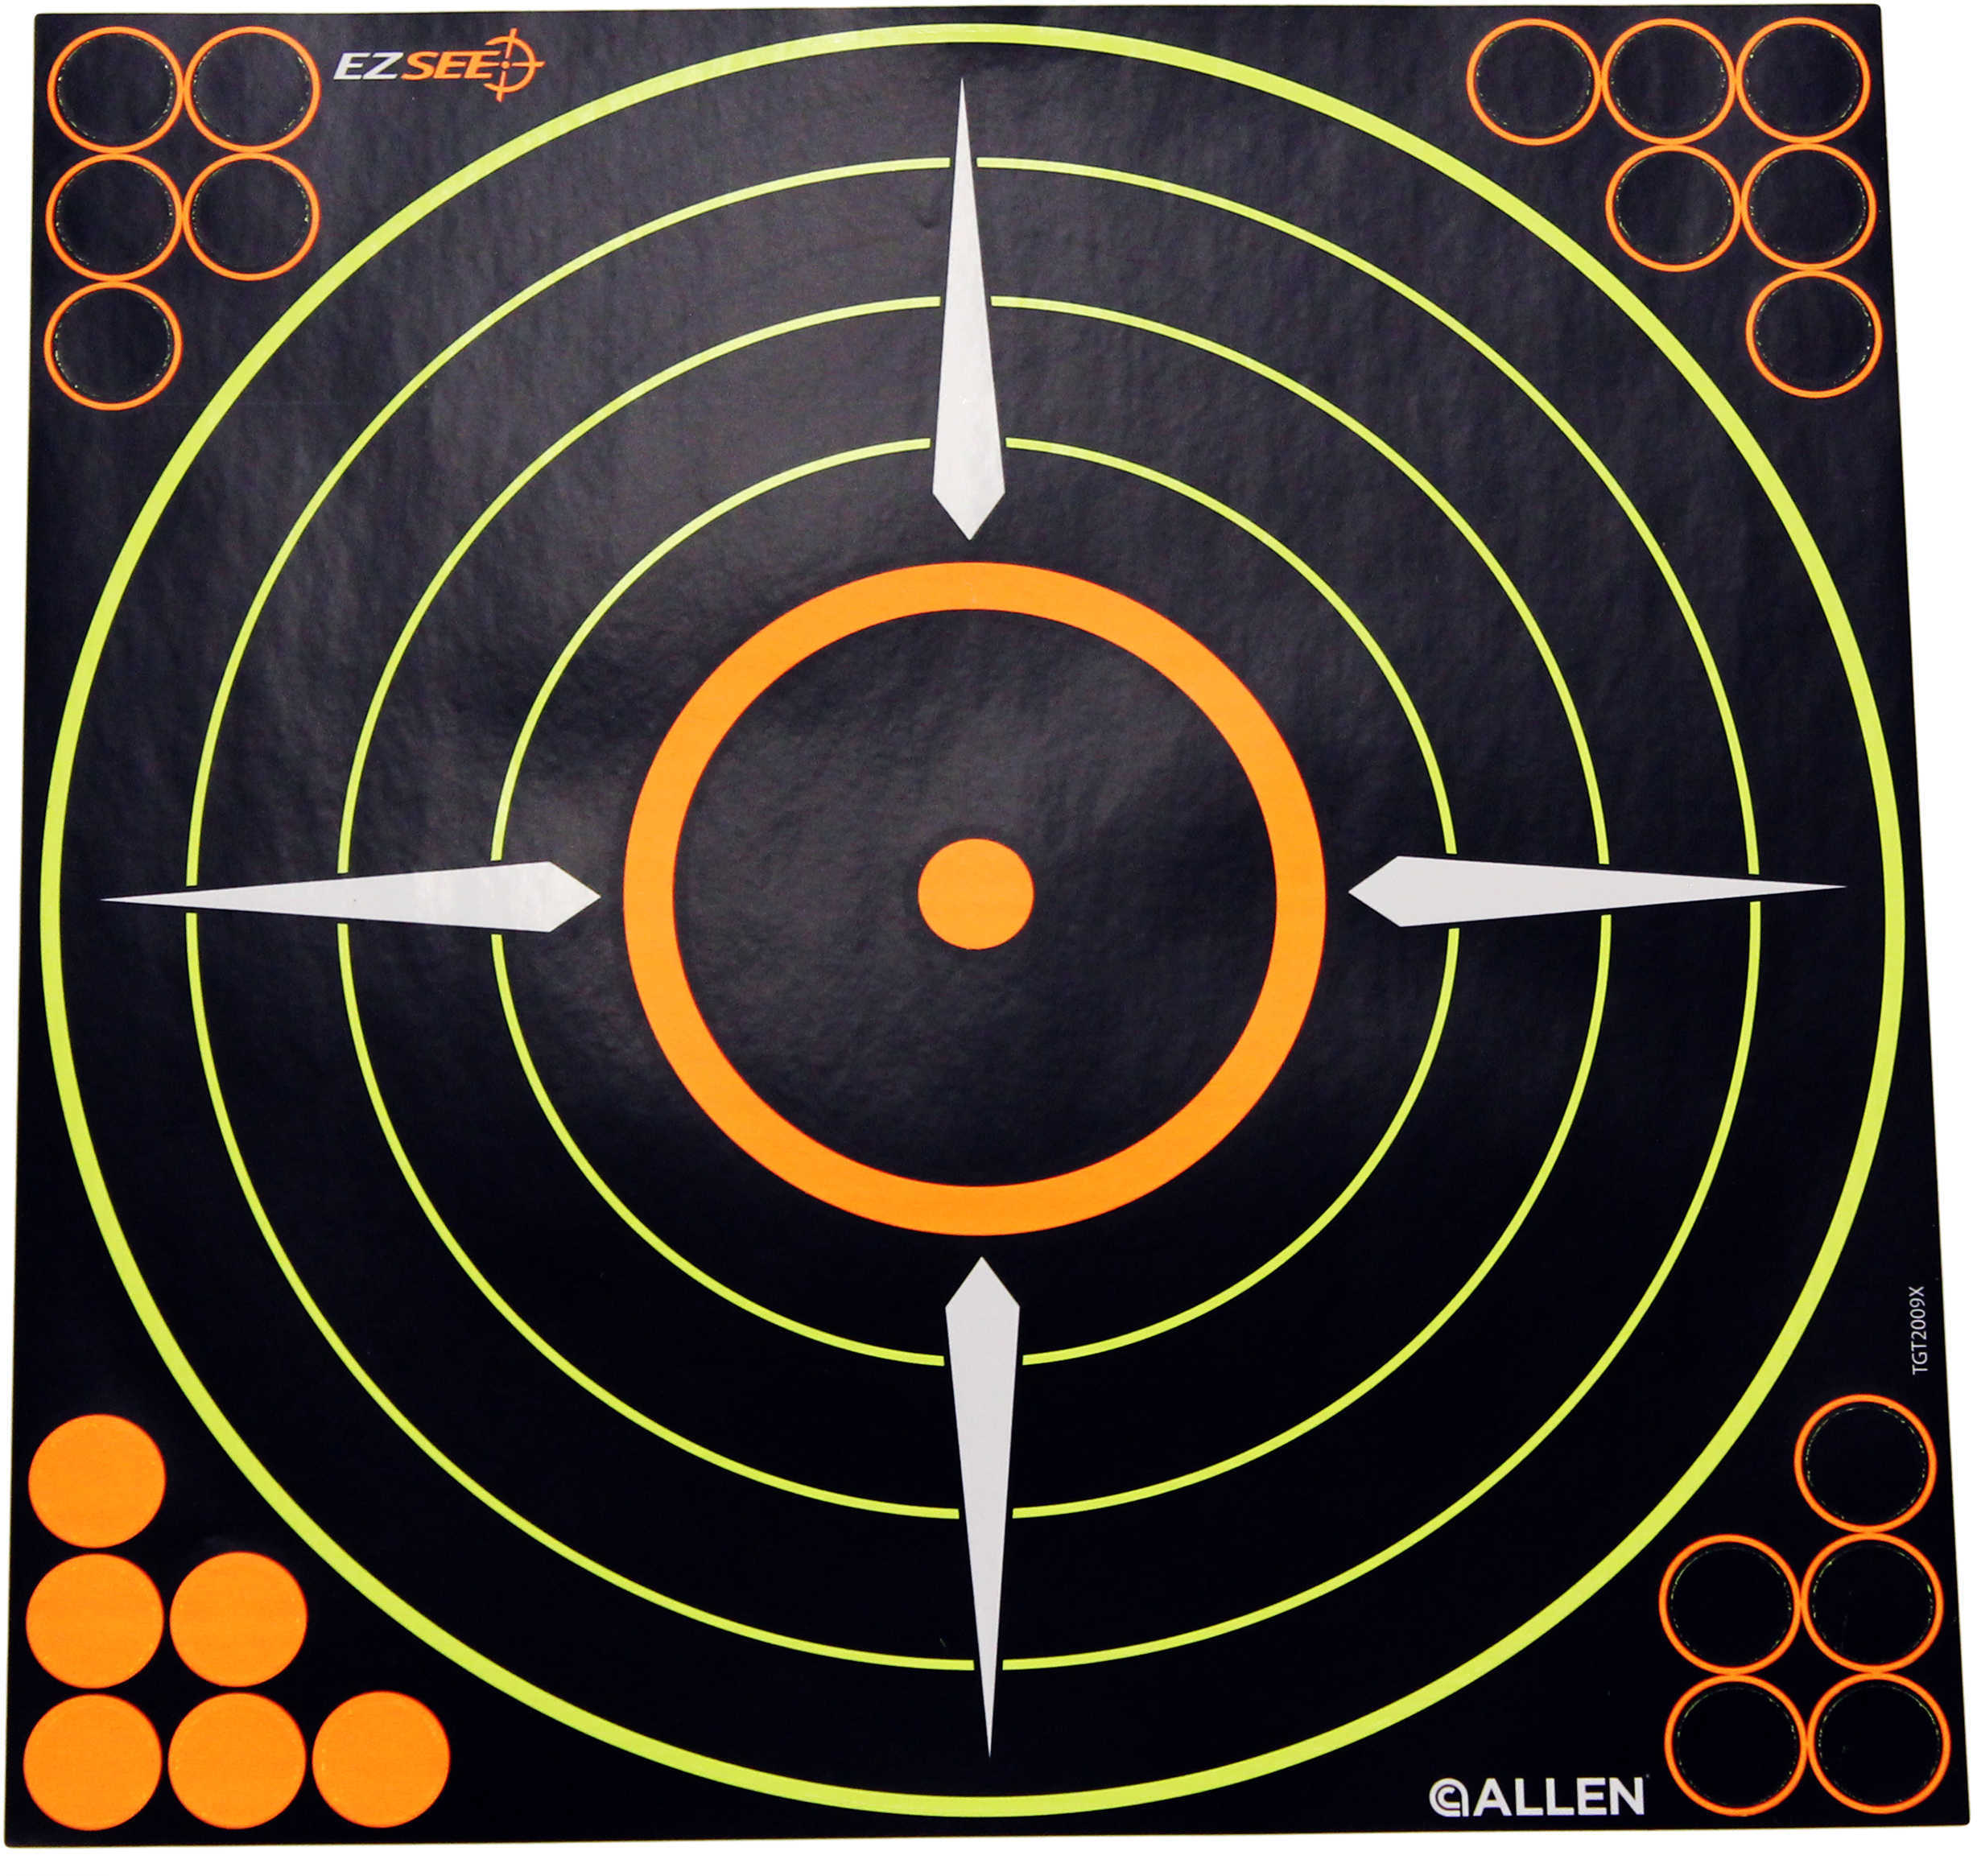 Allen EZ See Adhesive Bullseye Target, 8.5"X8.5", 6 Pack 15228